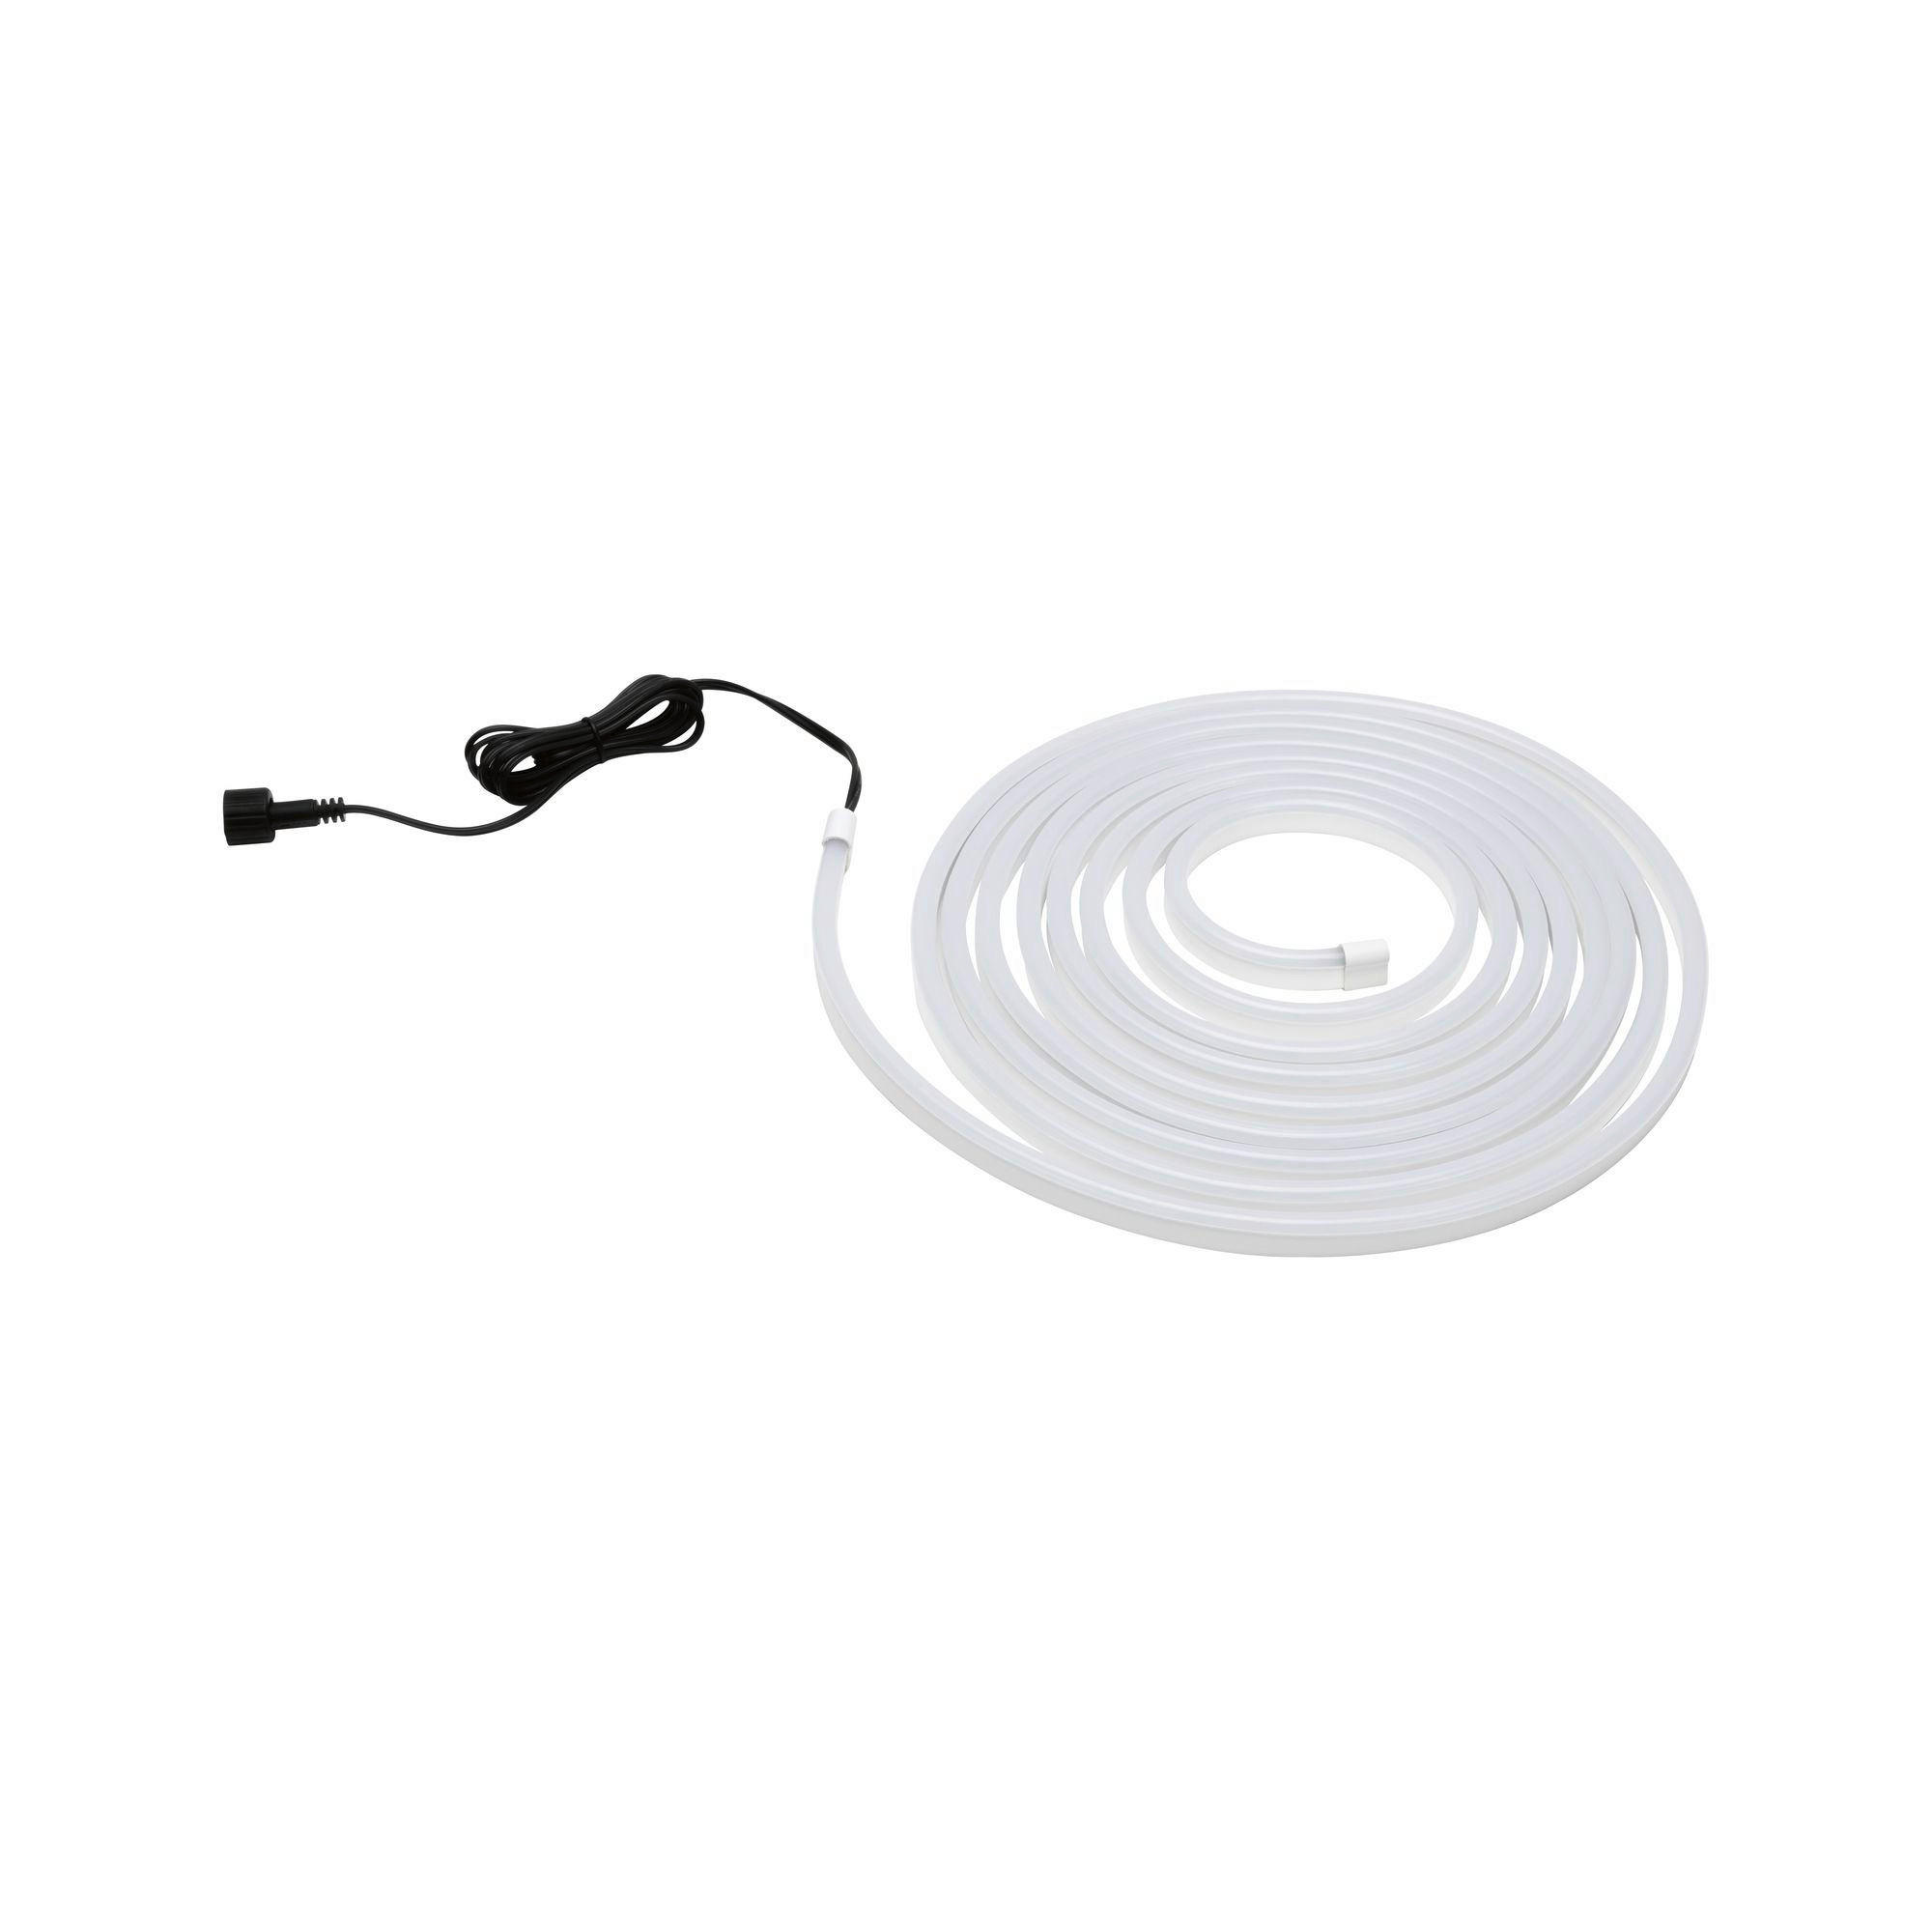 LED-STRIP 500 cm  - Weiß, Basics, Kunststoff (500cm) - Paulmann